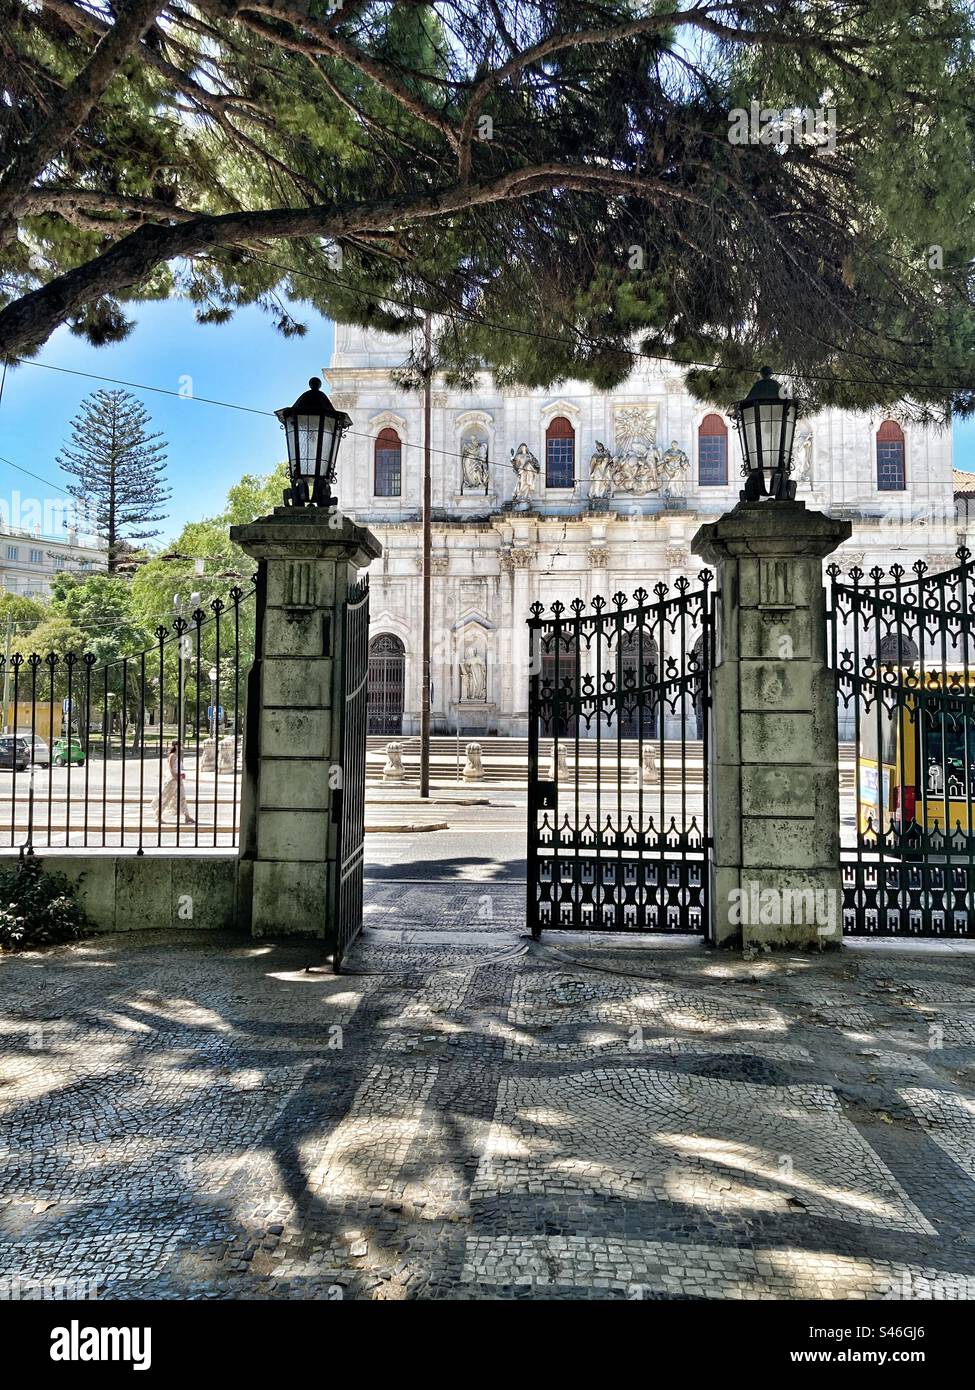 Vue parciale de Basilica da Estrela, Lisbonne, et entrée de ce côté de Jardim (jardin) da Estrela. Portes en fer et lumières d'entrée du jardin côté Basilique. Banque D'Images